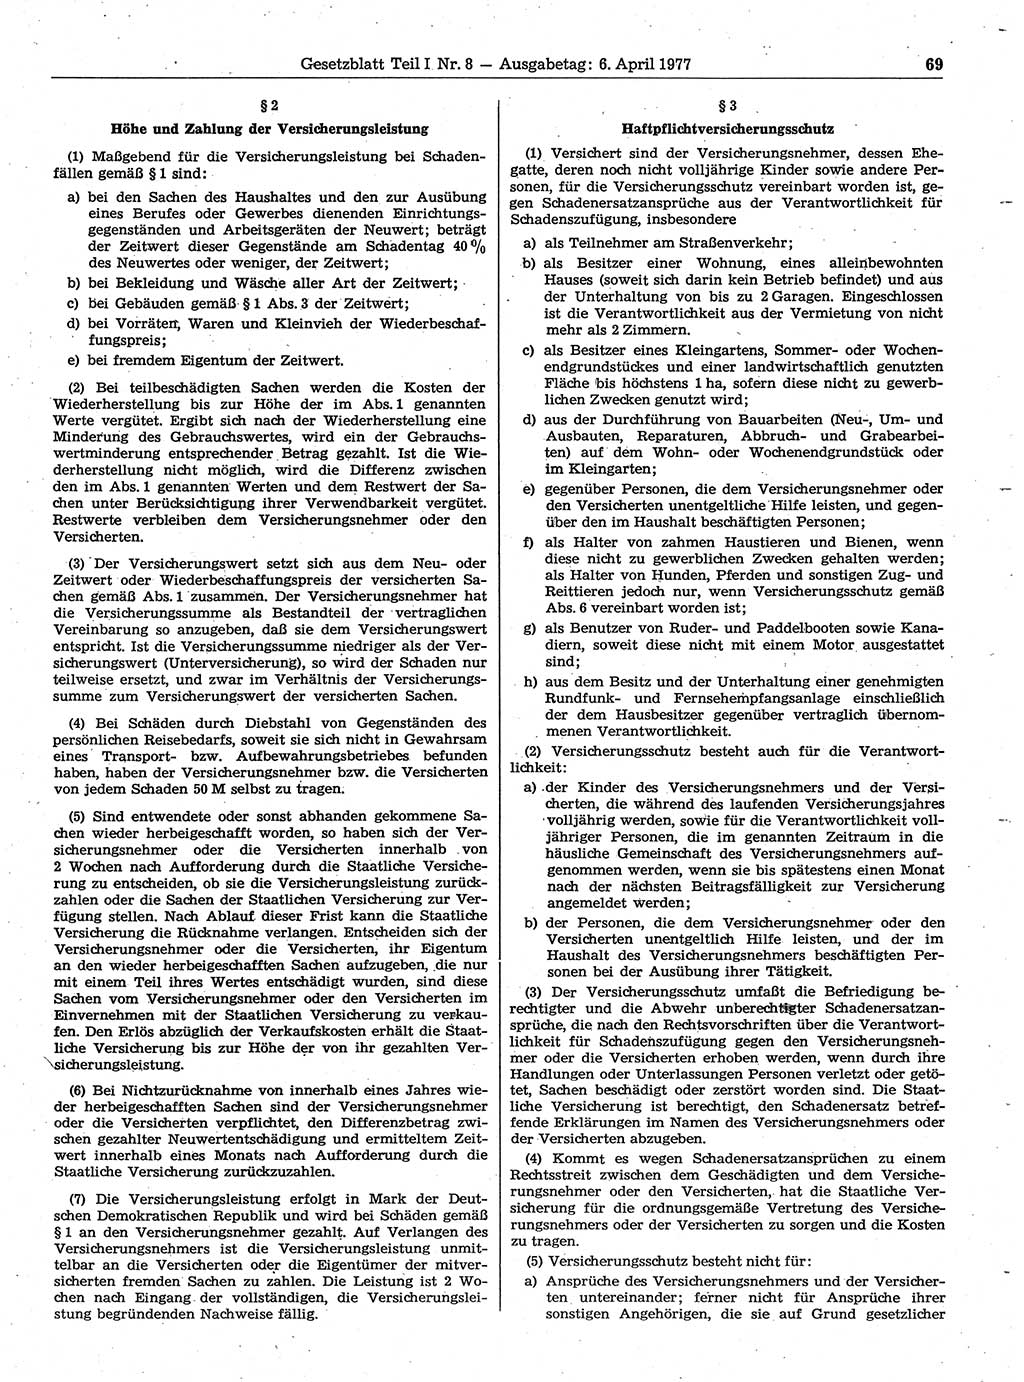 Gesetzblatt (GBl.) der Deutschen Demokratischen Republik (DDR) Teil Ⅰ 1977, Seite 69 (GBl. DDR Ⅰ 1977, S. 69)